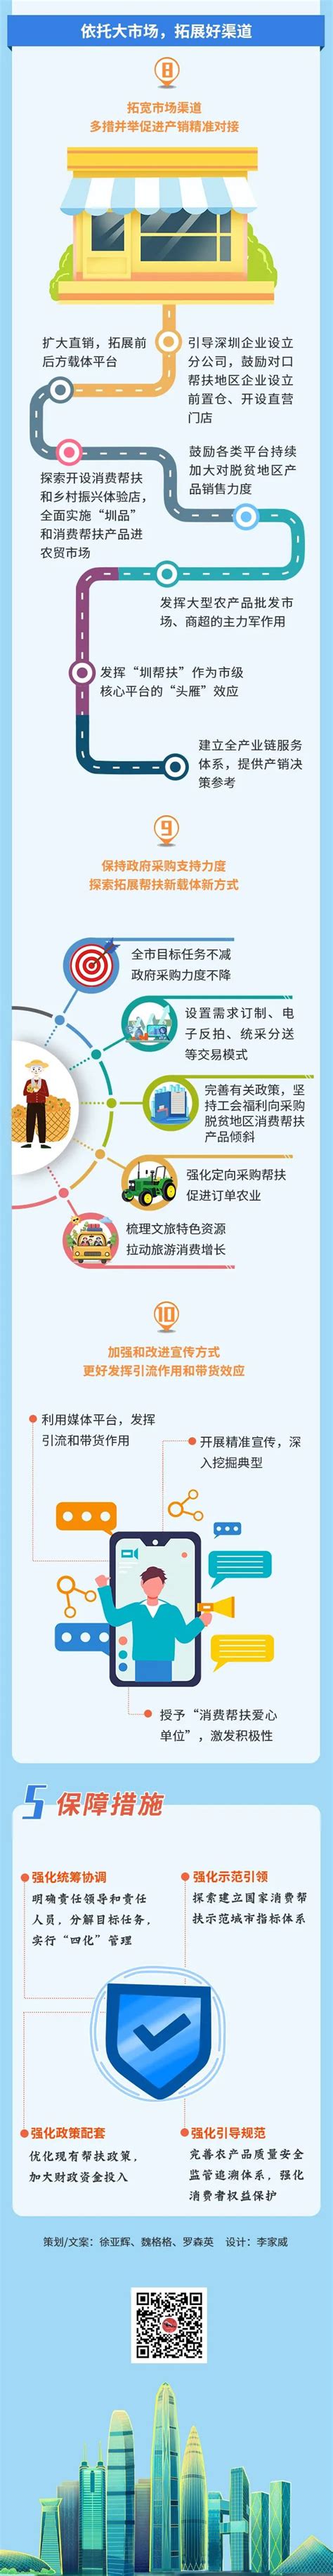 新乡强化月饼市场监管 促进月饼消费回归理性_市县_河南省发展和改革委员会